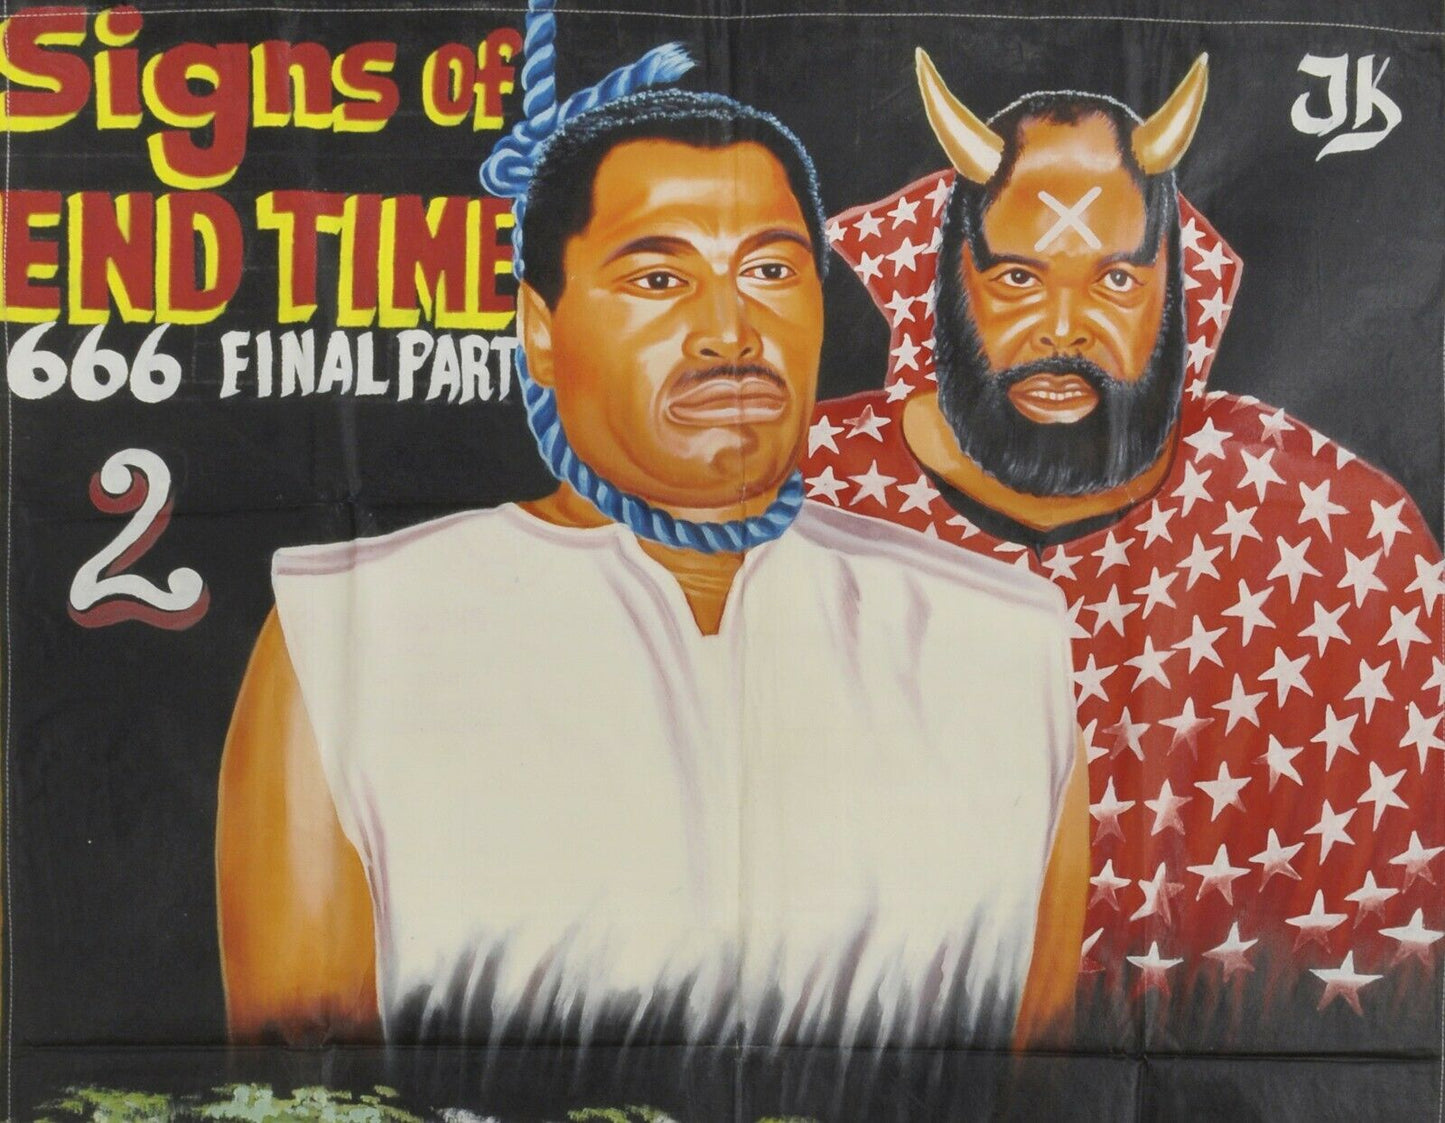 Movie Cinema poster Ghana Pittura a olio africana Dipinto a mano Juju SEGNI DELLA FINE DEL TEMPO - Tribalgh